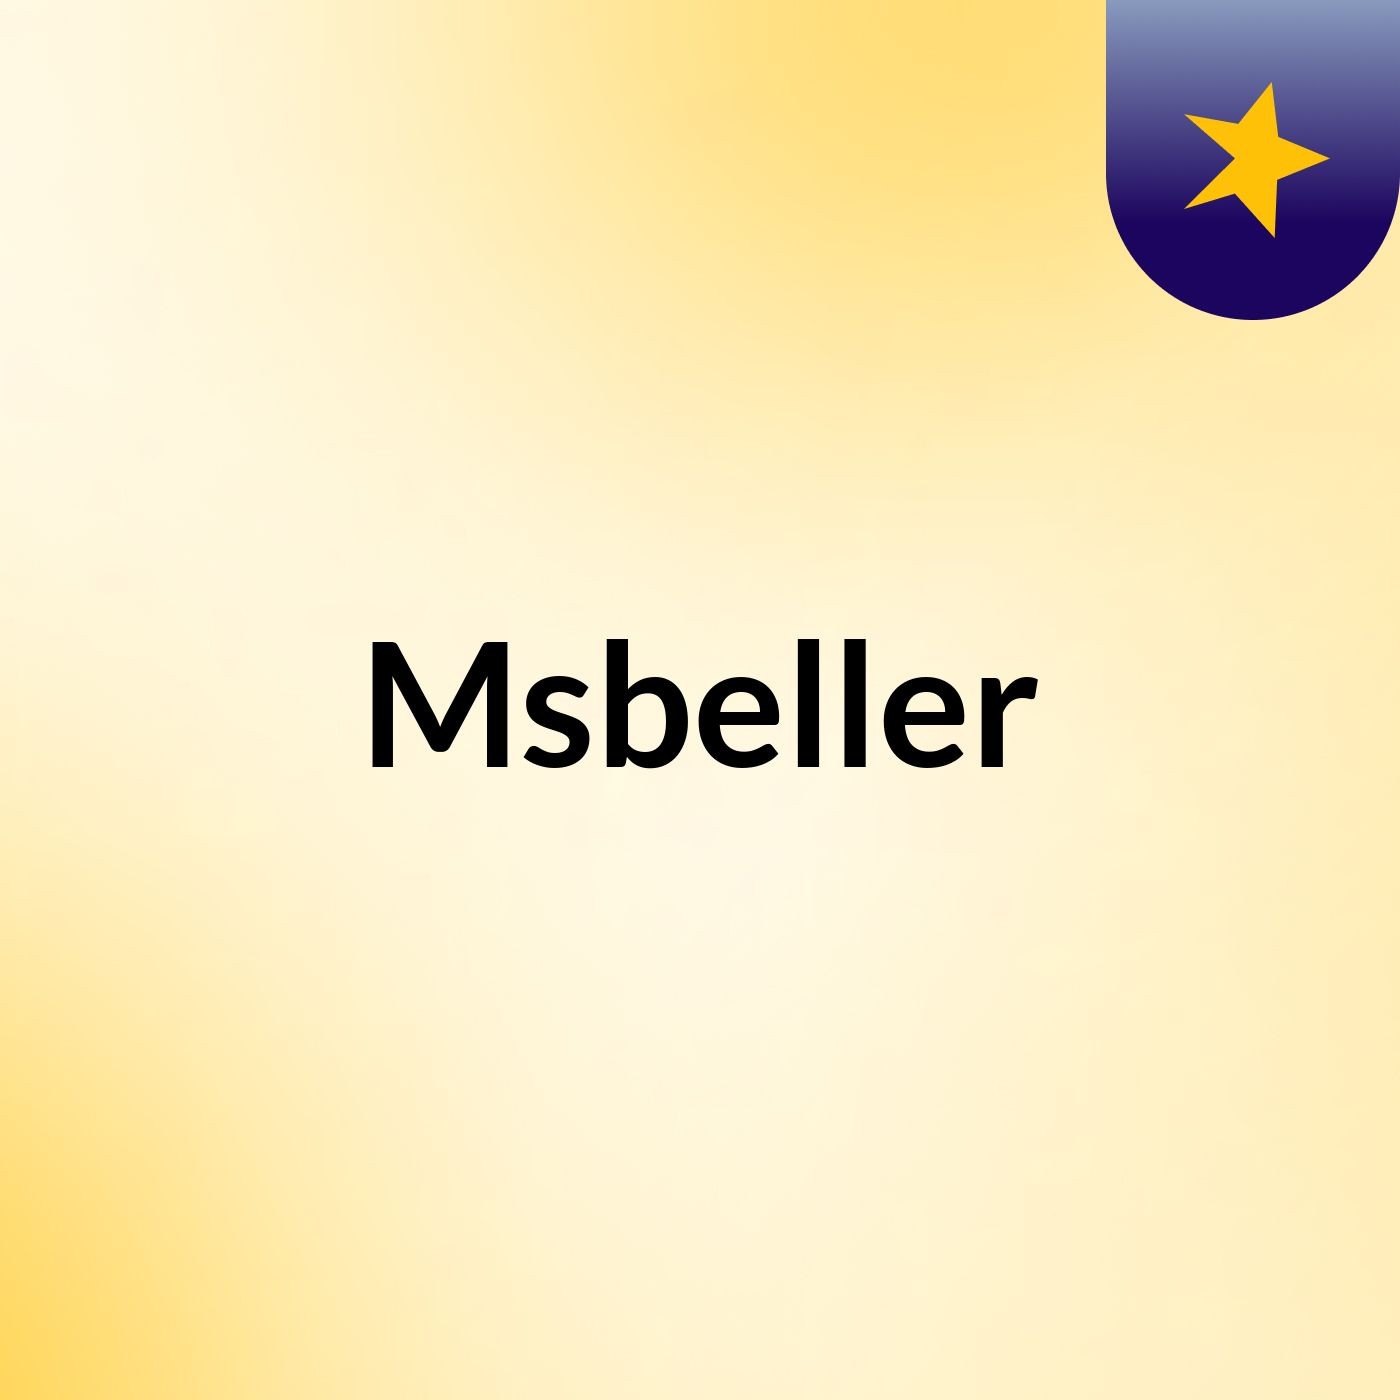 Msbeller